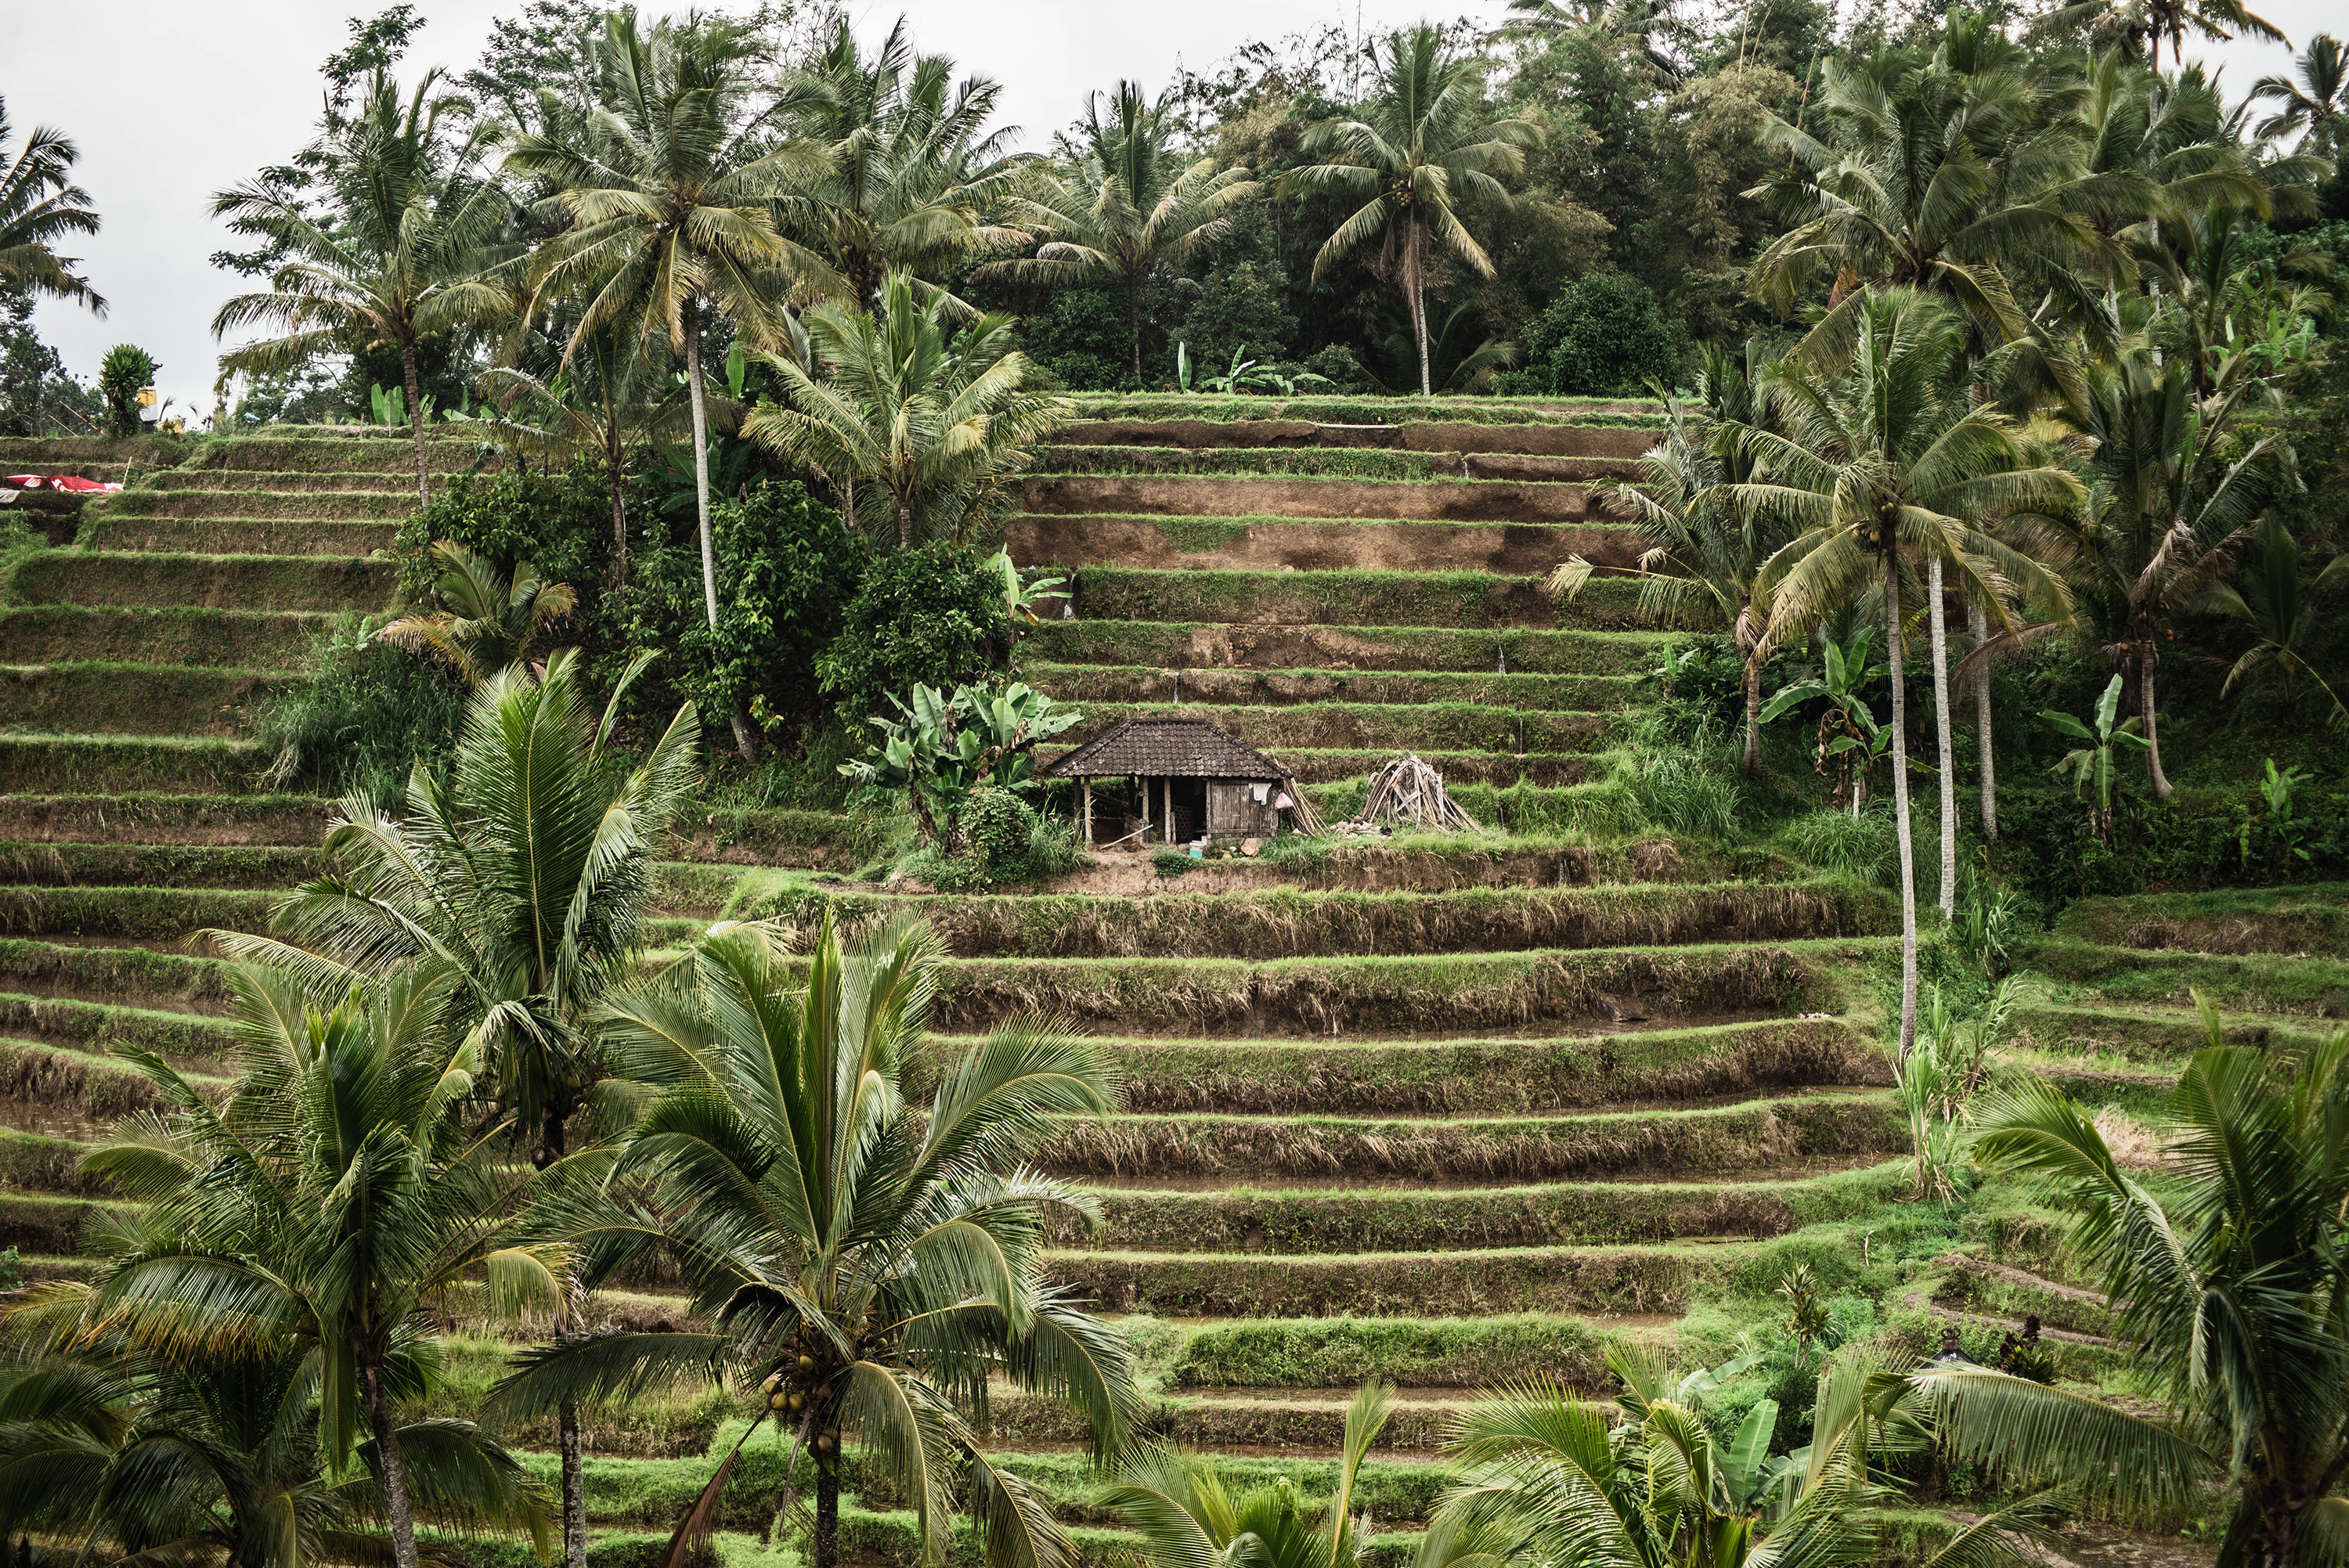 Les terrasses de riz de Jatiluwih à Bali